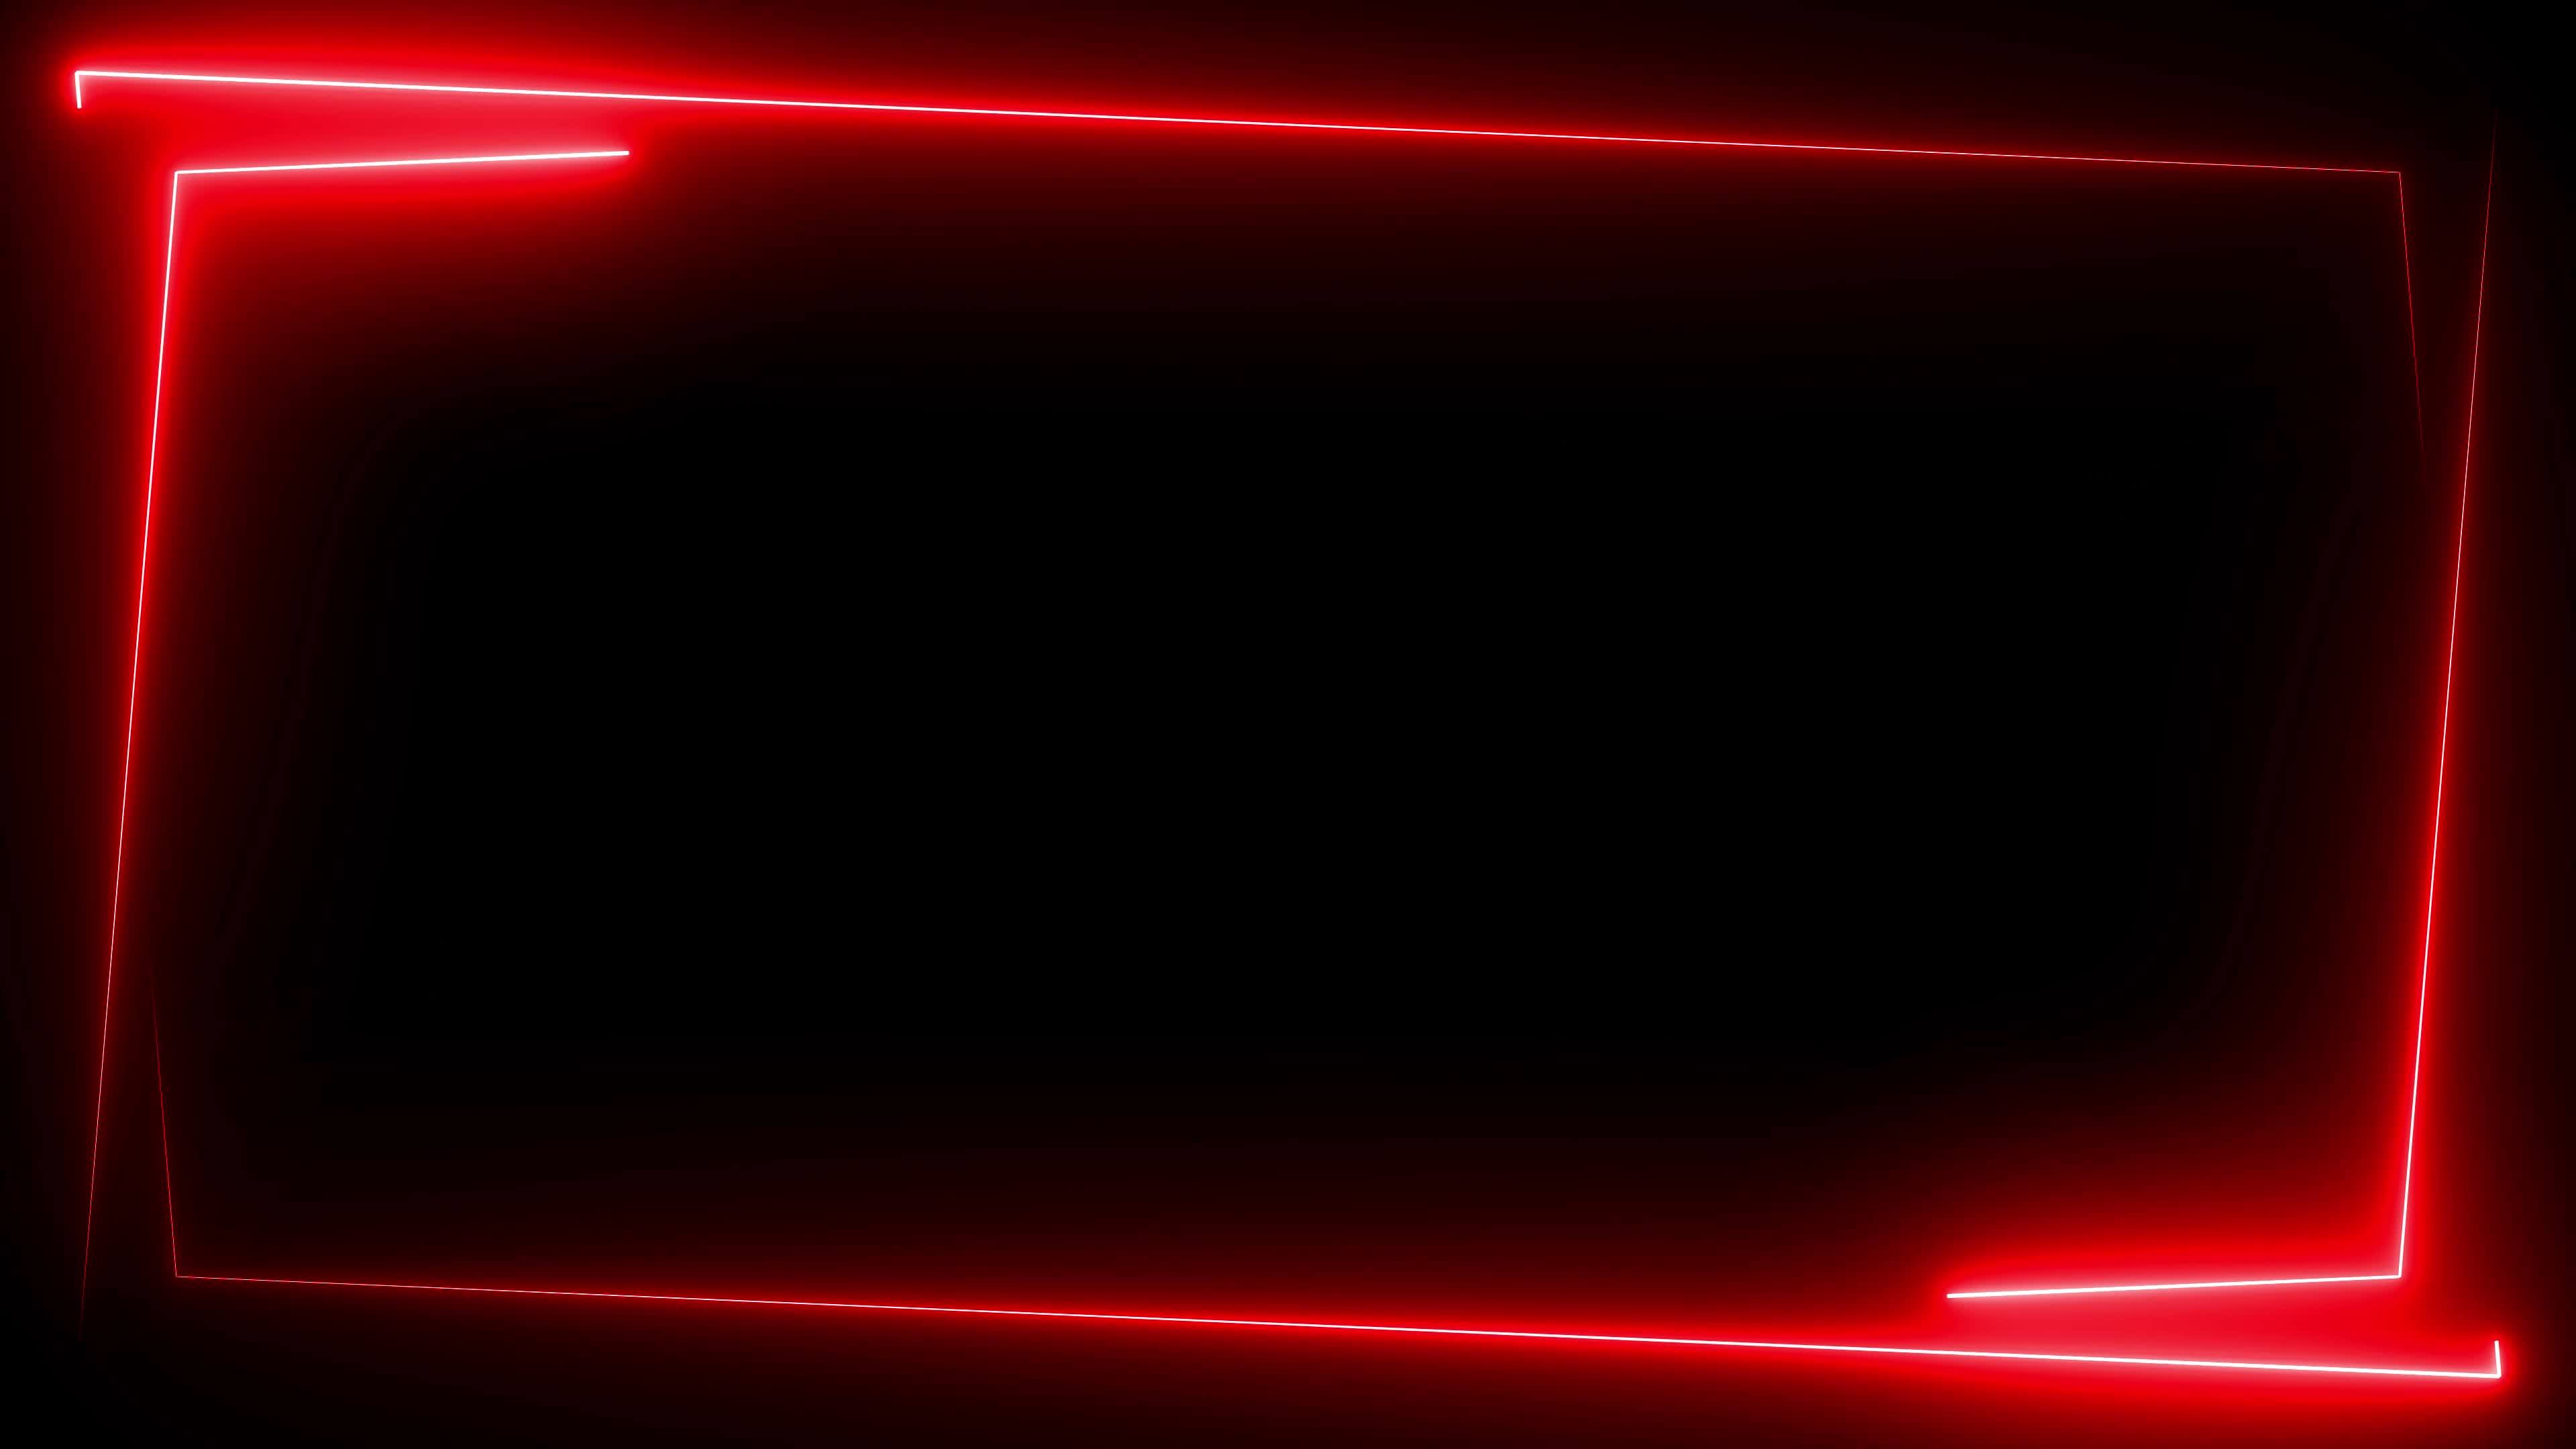 Thiết kế với gam đỏ tươi sáng, khung neon đang là xu hướng mới trang trí không gian sống hay công ty hiện nay. Để sở hữu \